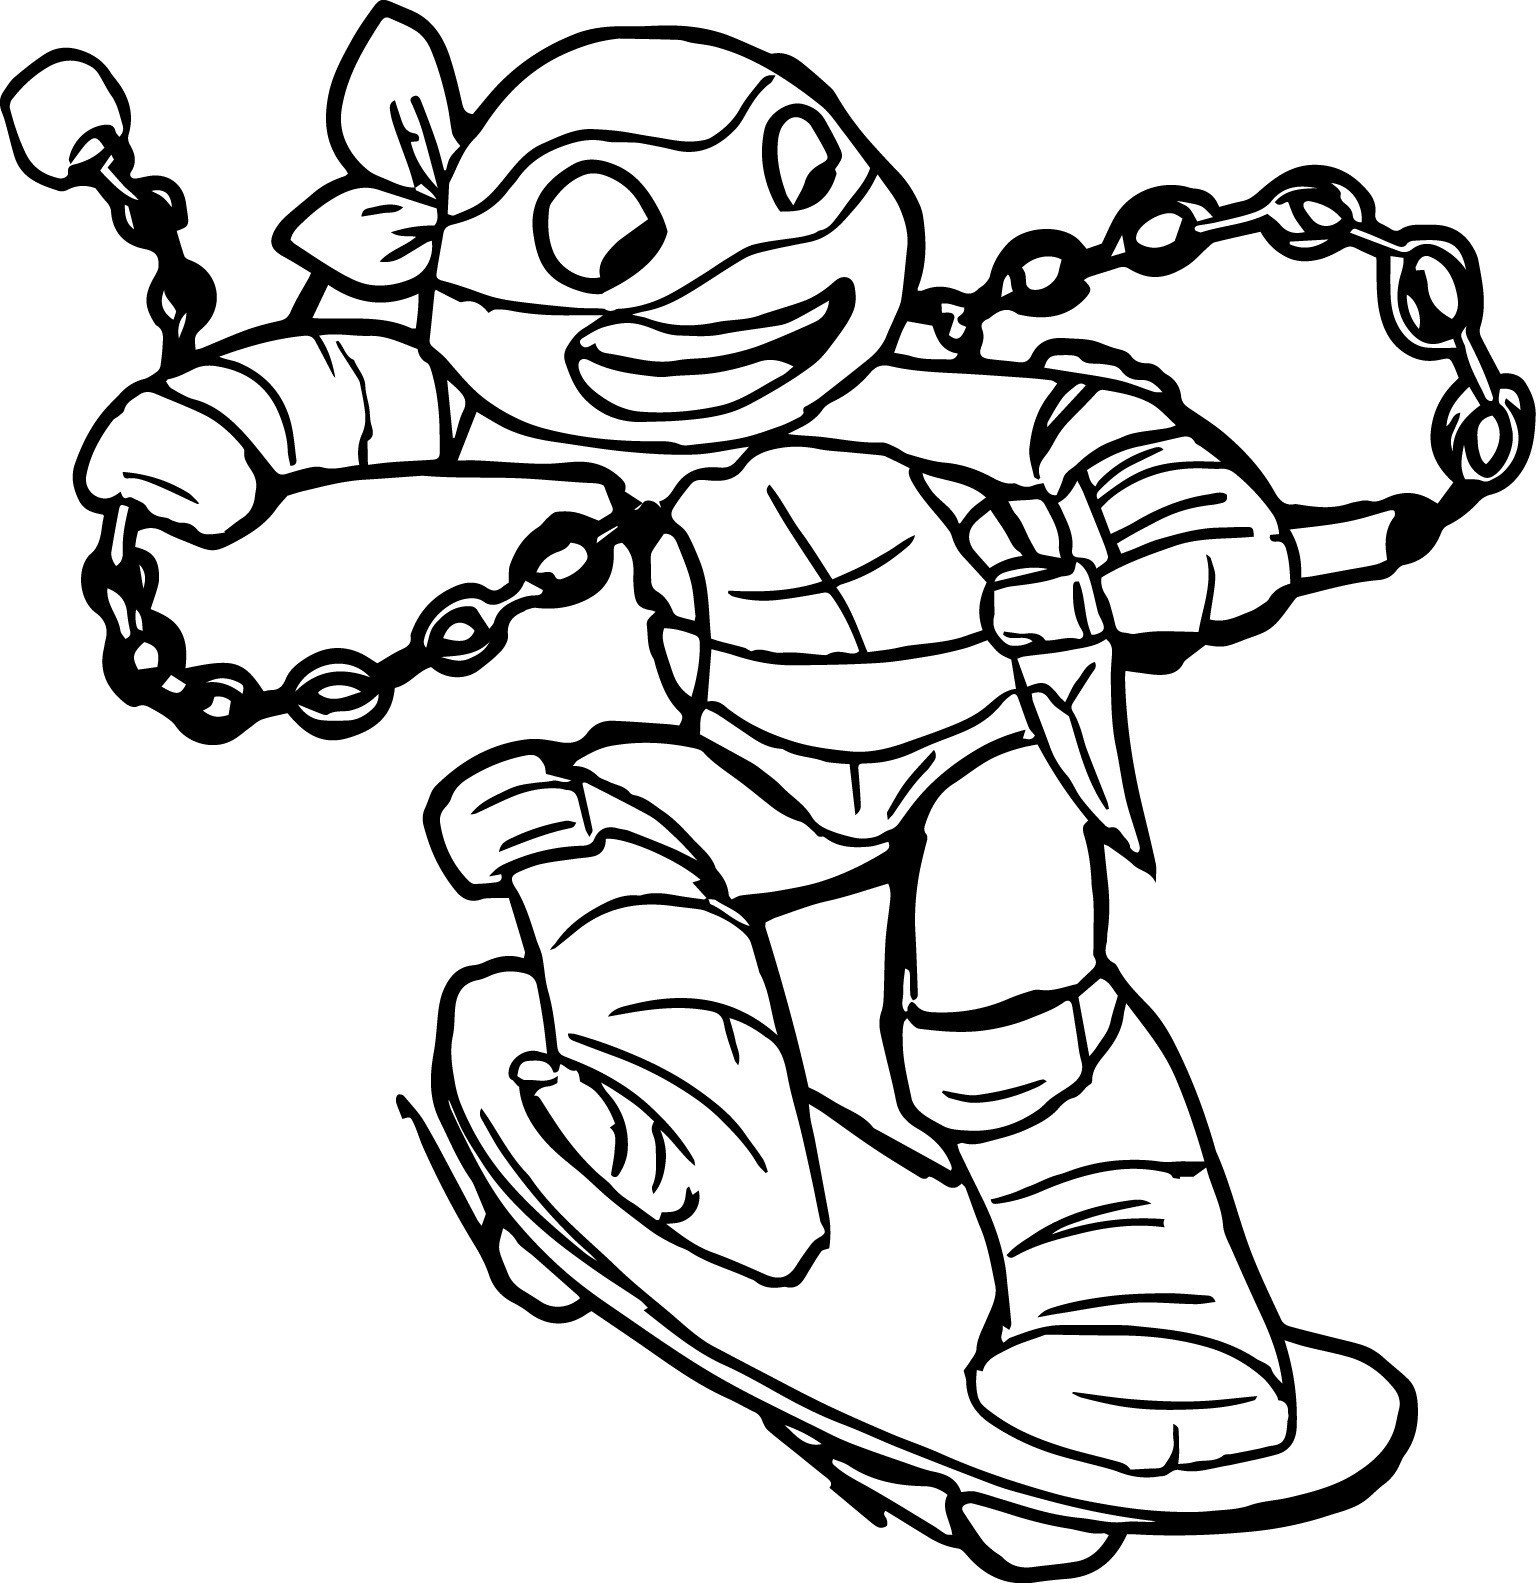 Tartaruga Leonardo  Turtle coloring pages, Ninja turtle coloring pages,  Dinosaur coloring pages